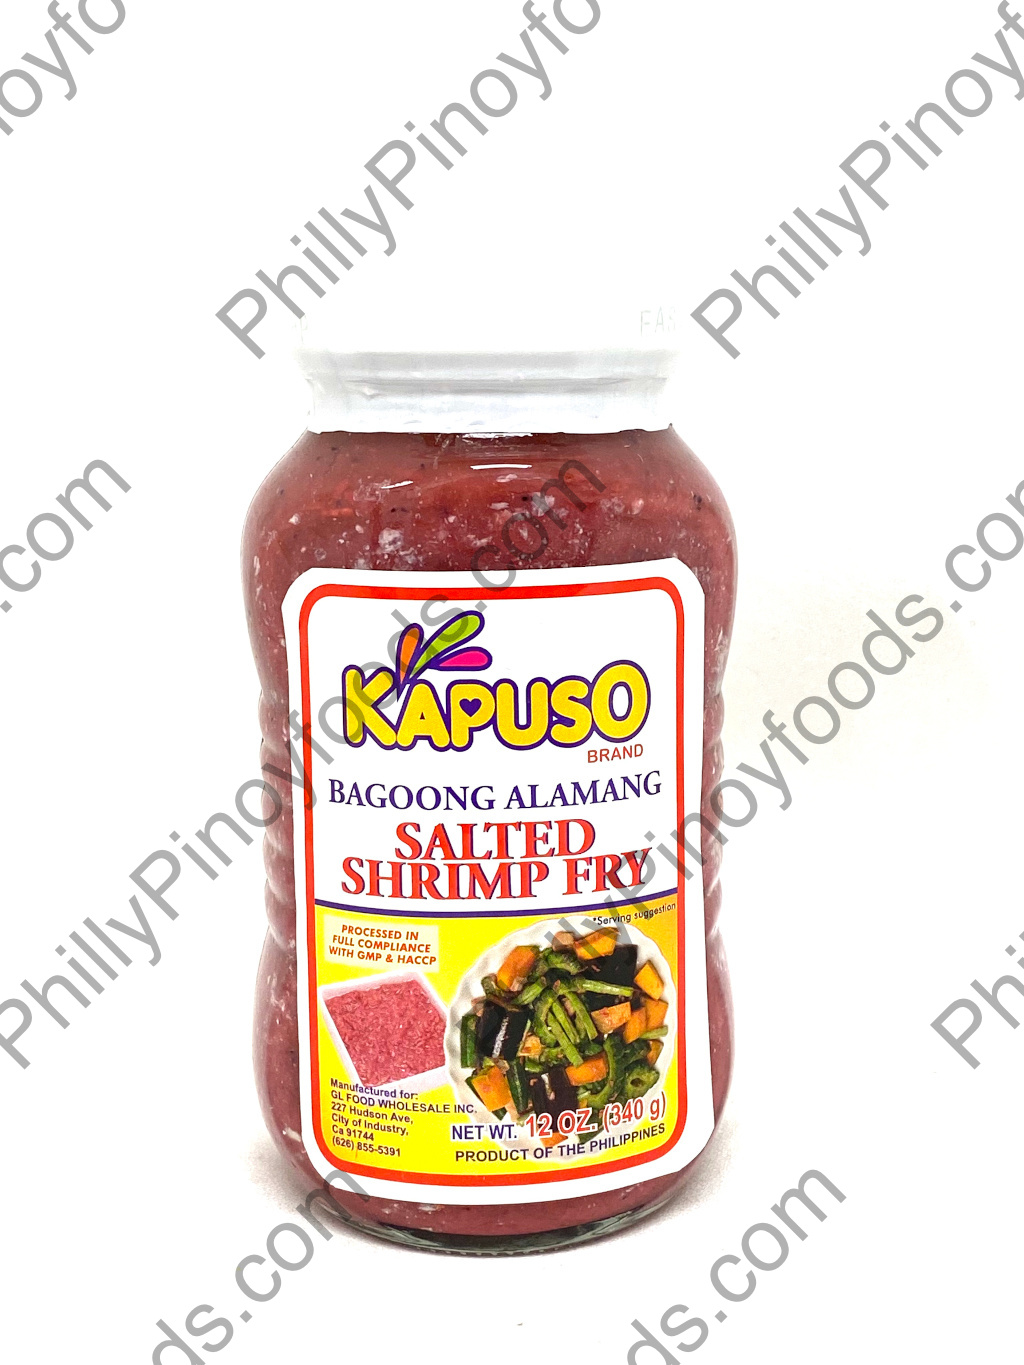 Kapuso Bagoong Alamang Salted Shrimp Fry 12oz (340g)